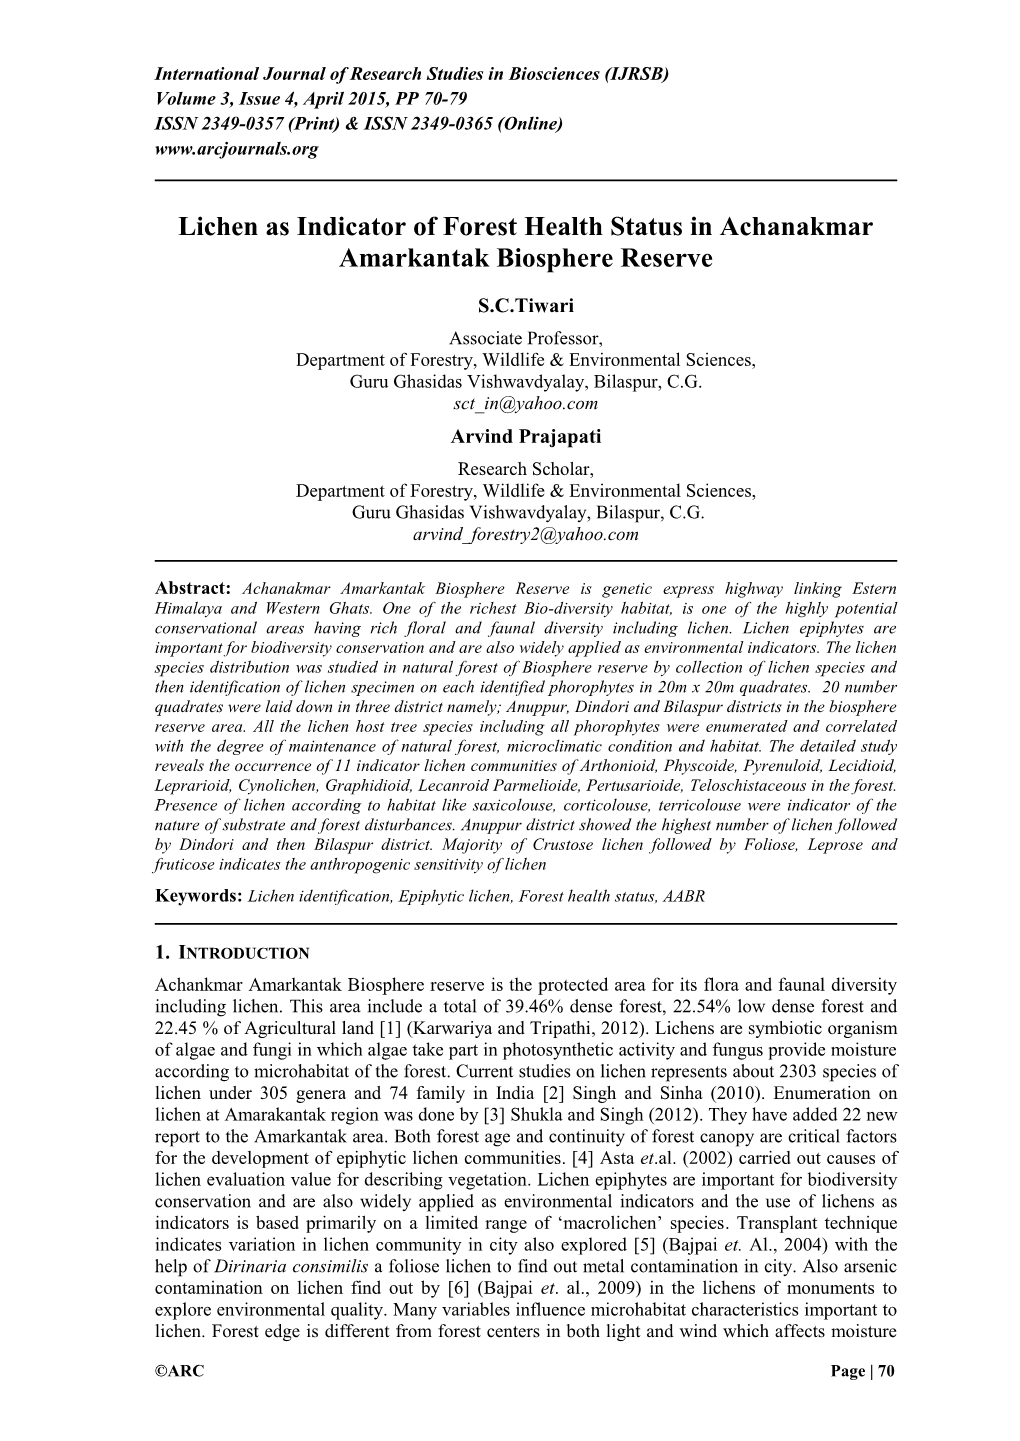 Lichen As Indicator of Forest Health in Achanakmar Amarkantak Biosphere Reserve